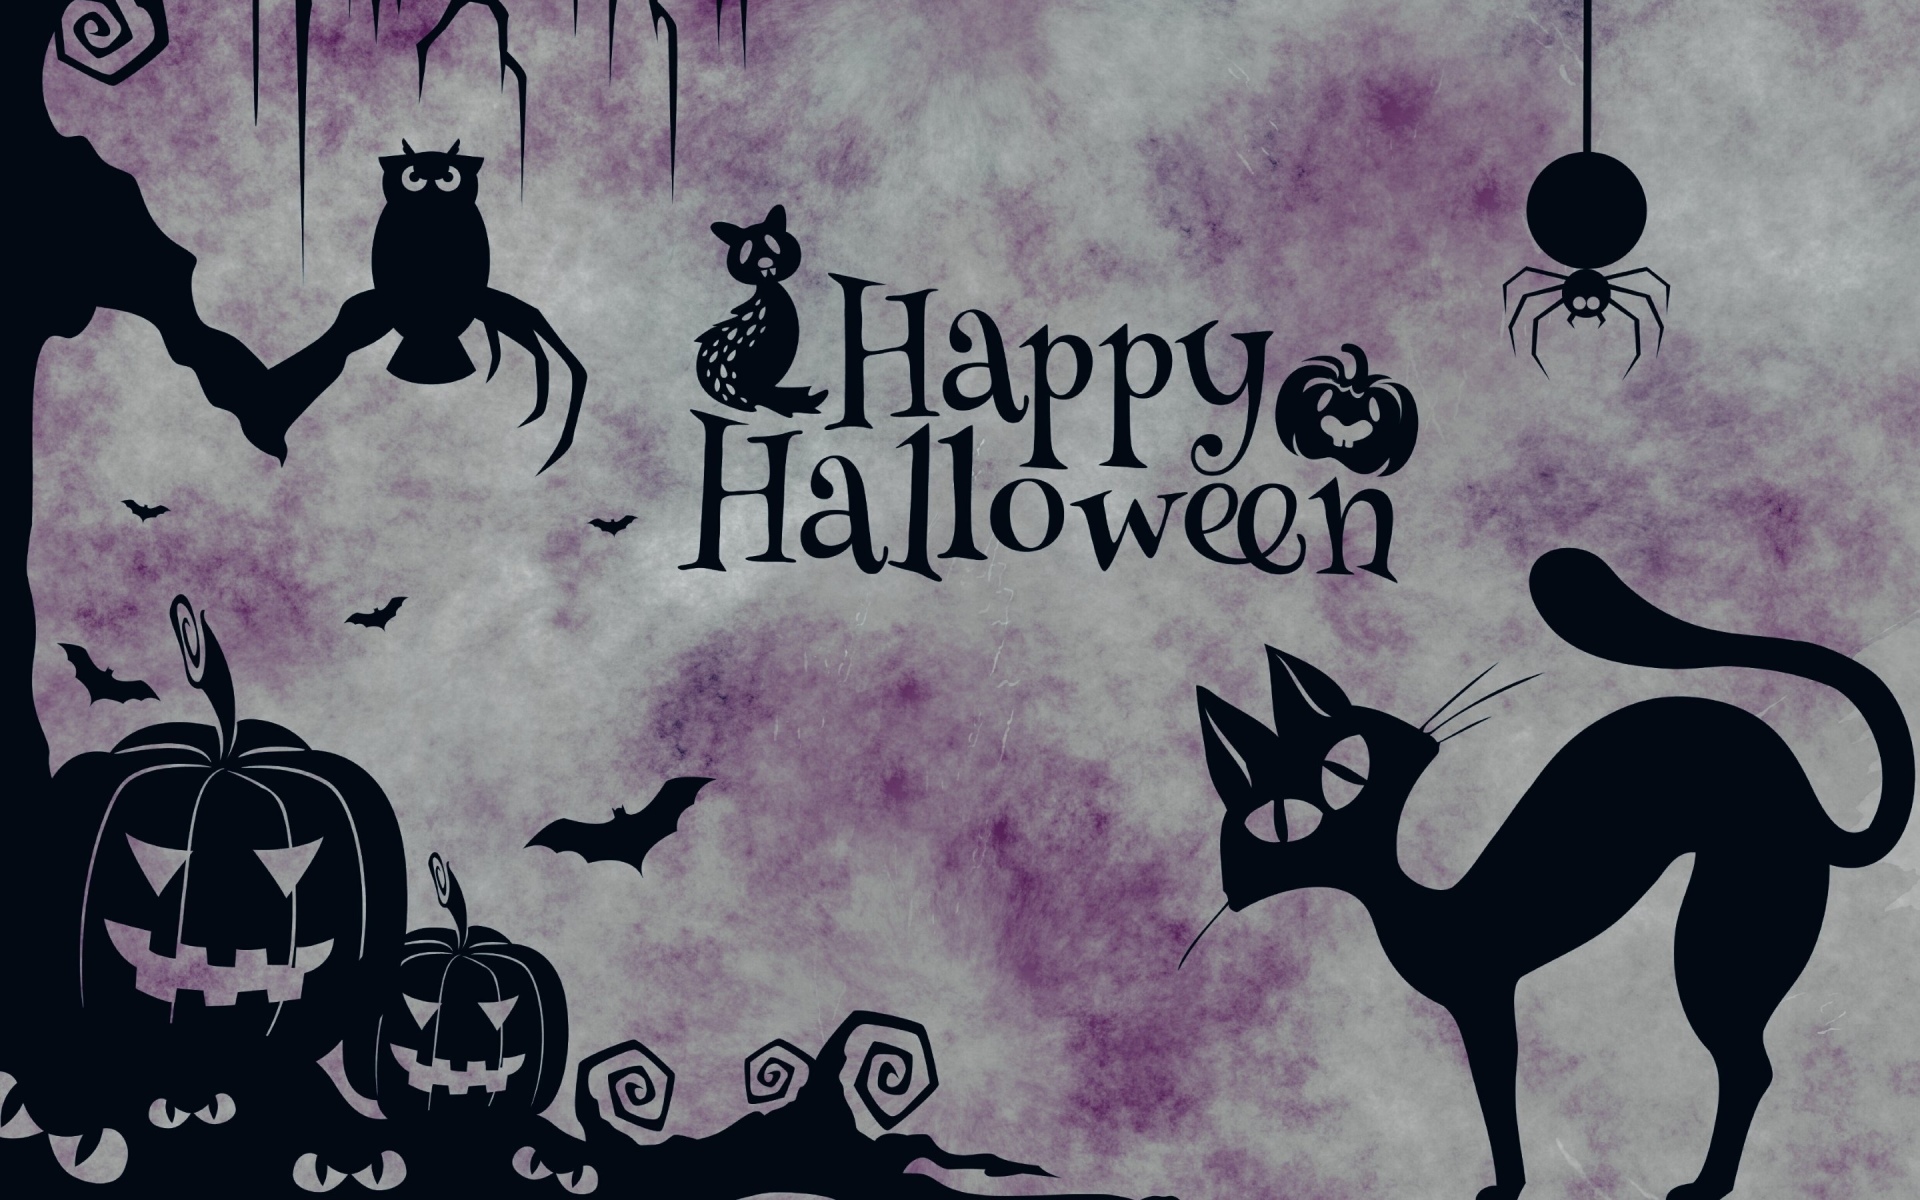 Halloween wallpapers, halloween fondos hd gratis